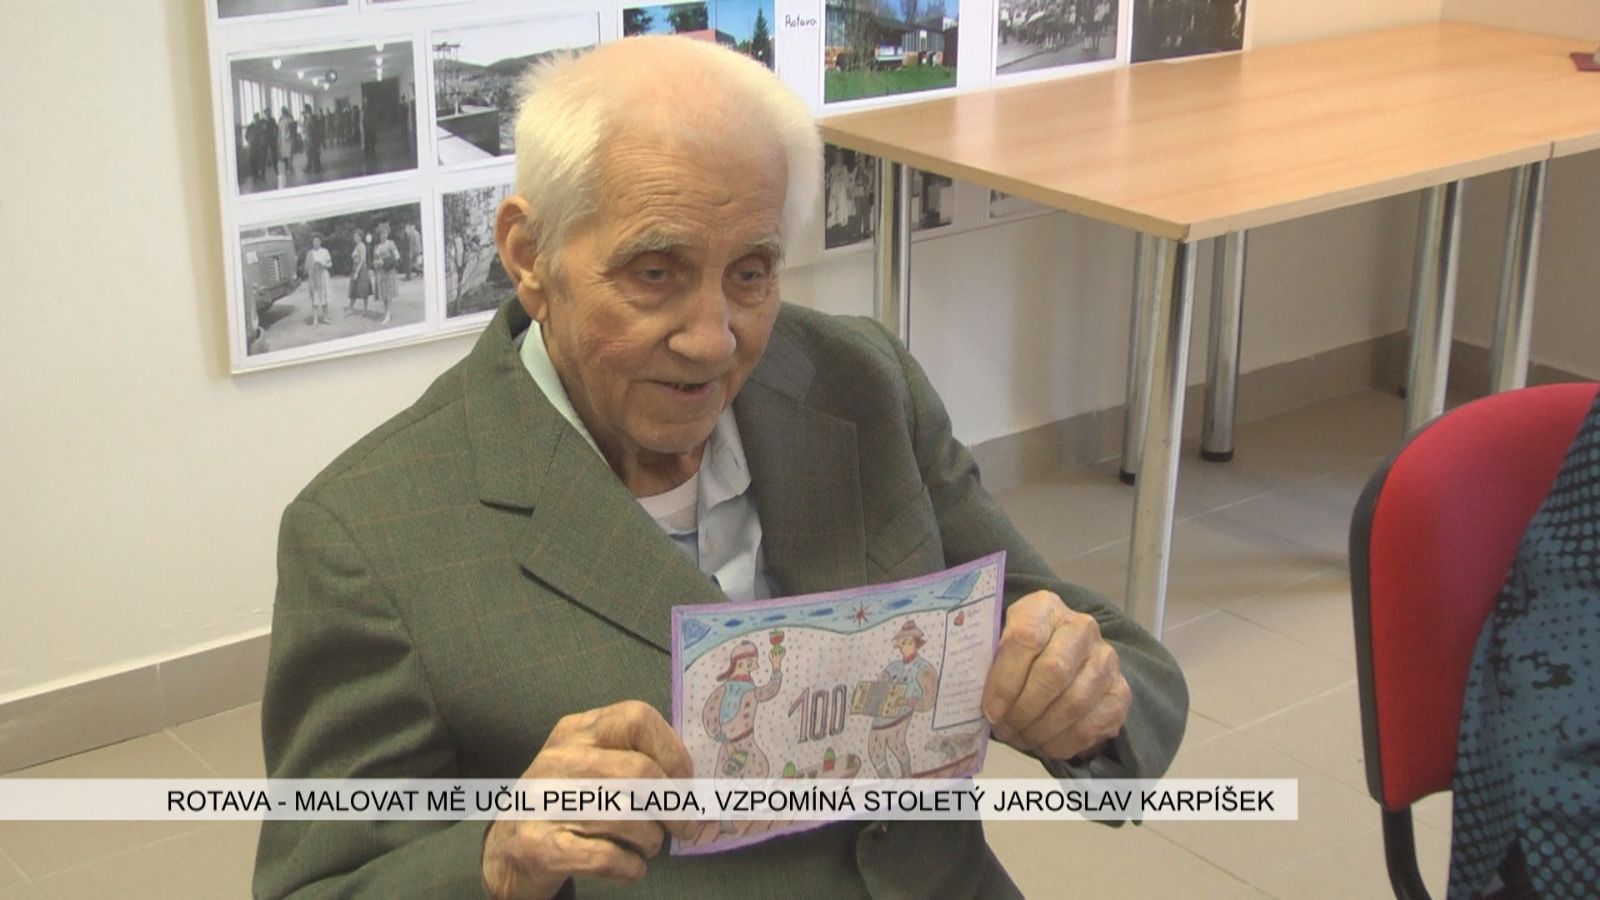 Rotava: Malovat mě učil Pepa Lada, vzpomíná stoletý Svatoslav Karpíšek (TV Západ)